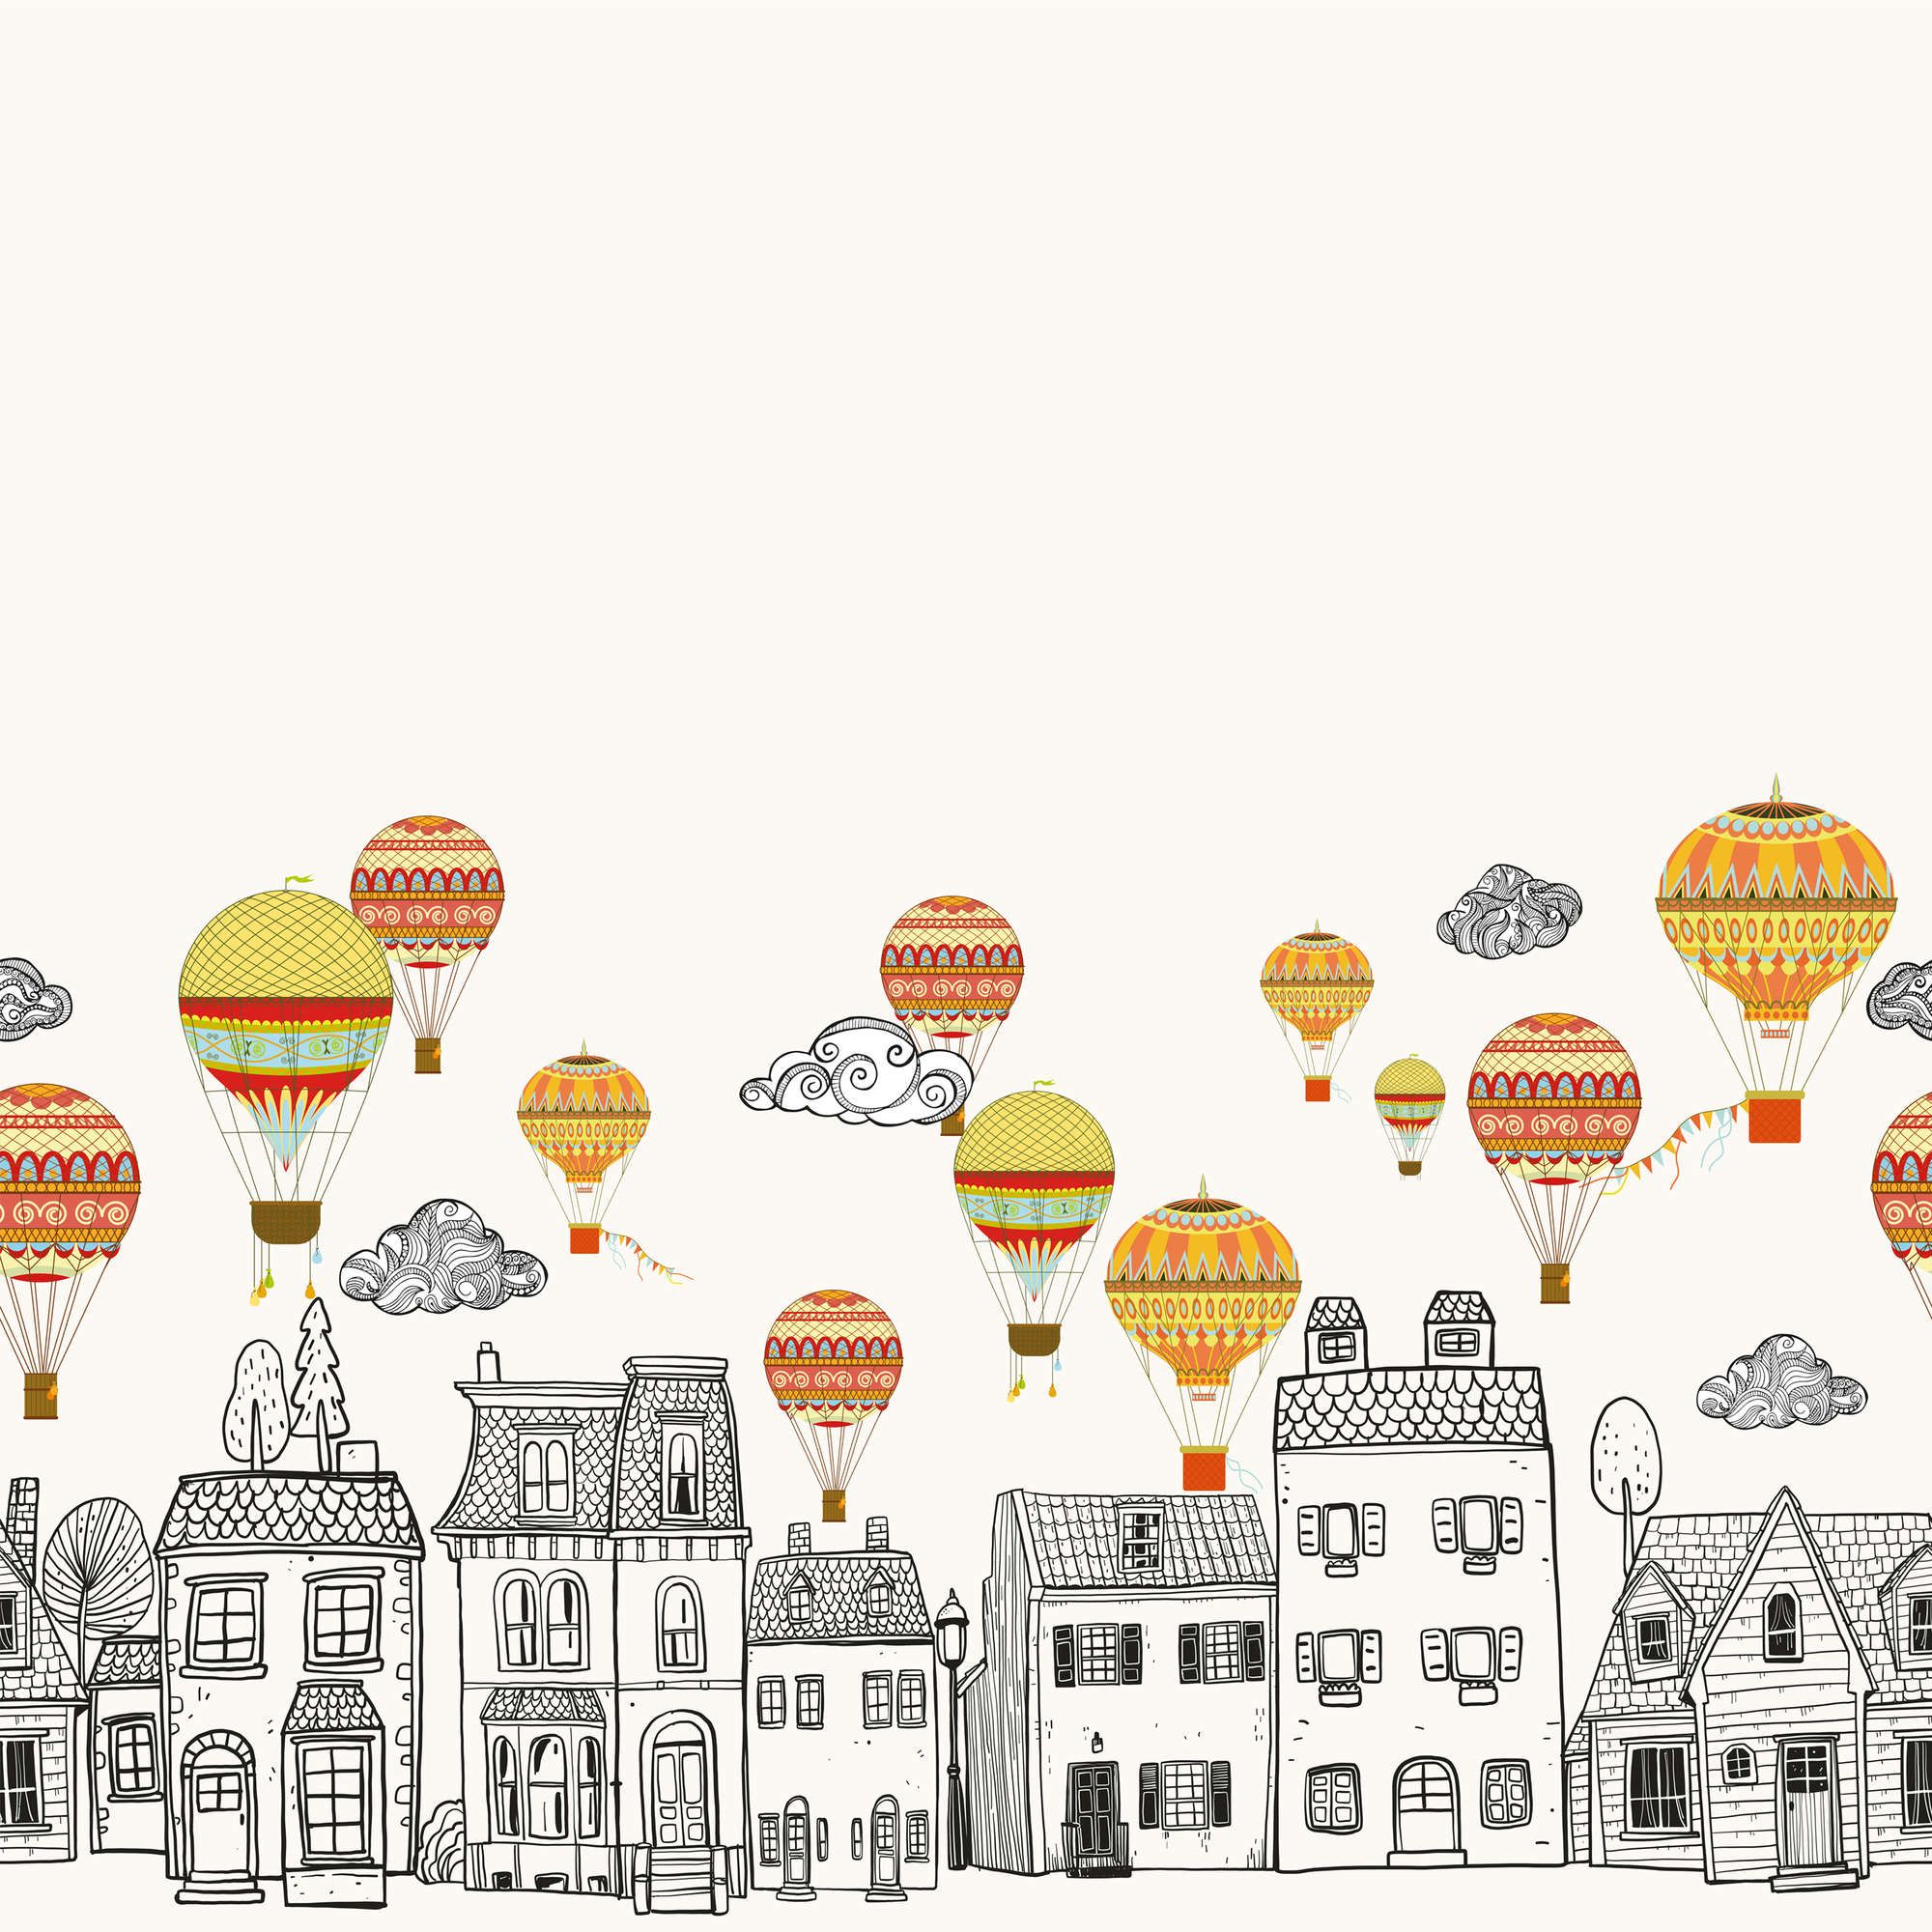             Papel pintado Pequeña ciudad con globos aerostáticos - Material sin tejer liso y ligero brillo
        